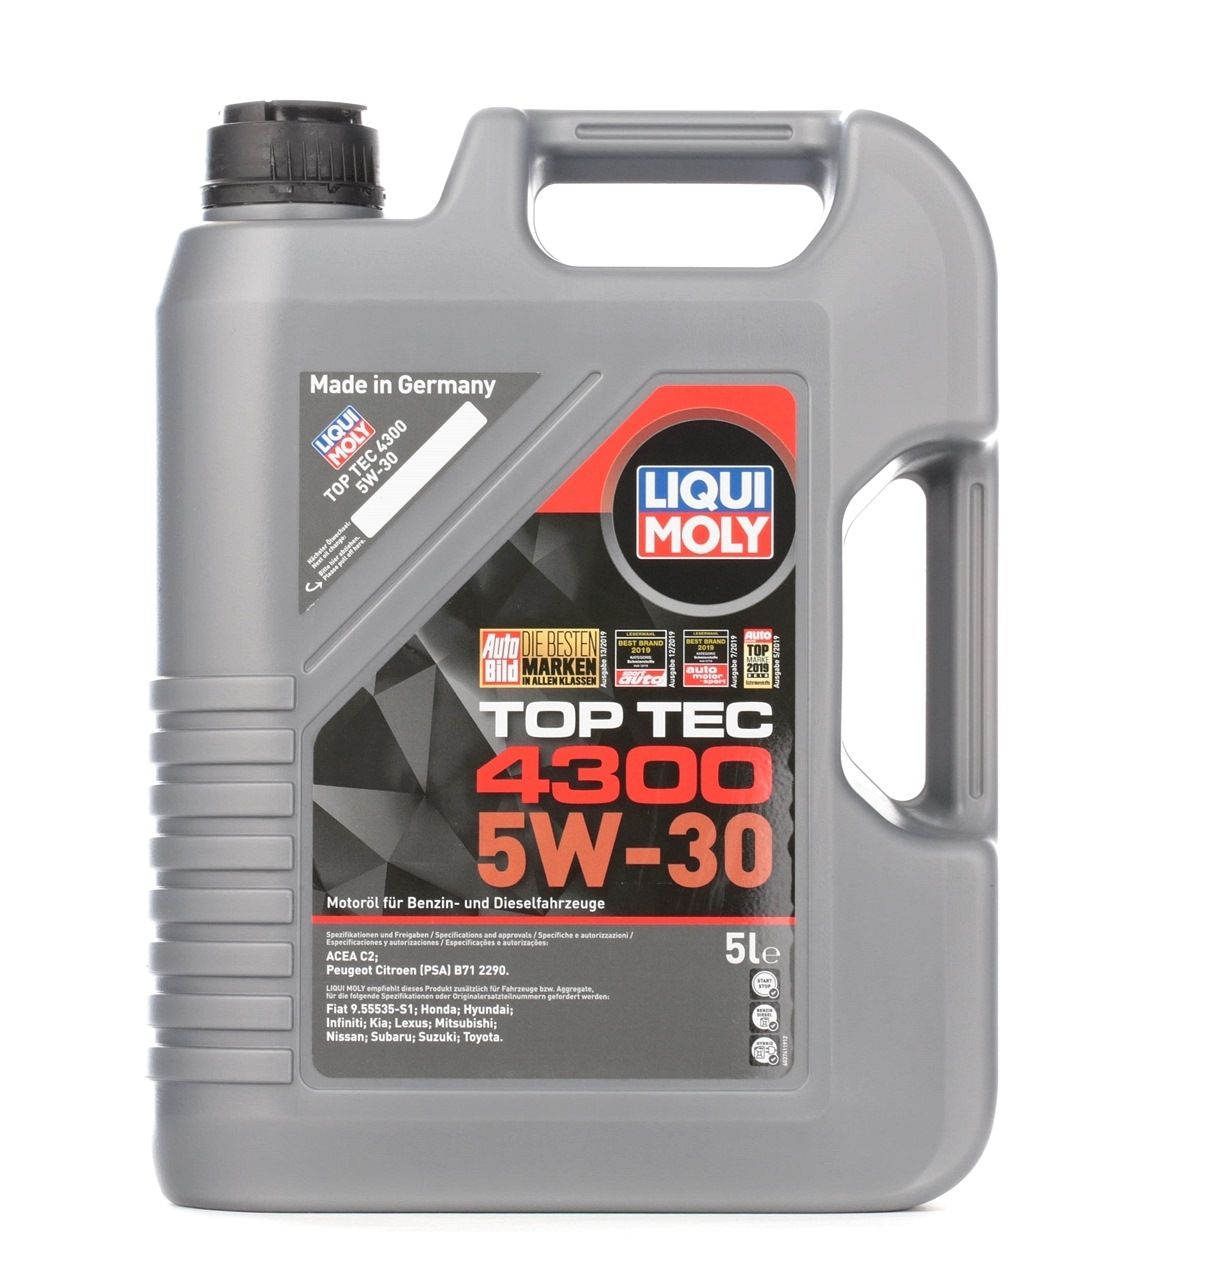 Liqui Moly Top Tec 4300 5W-30 Motoröl, 1 Liter